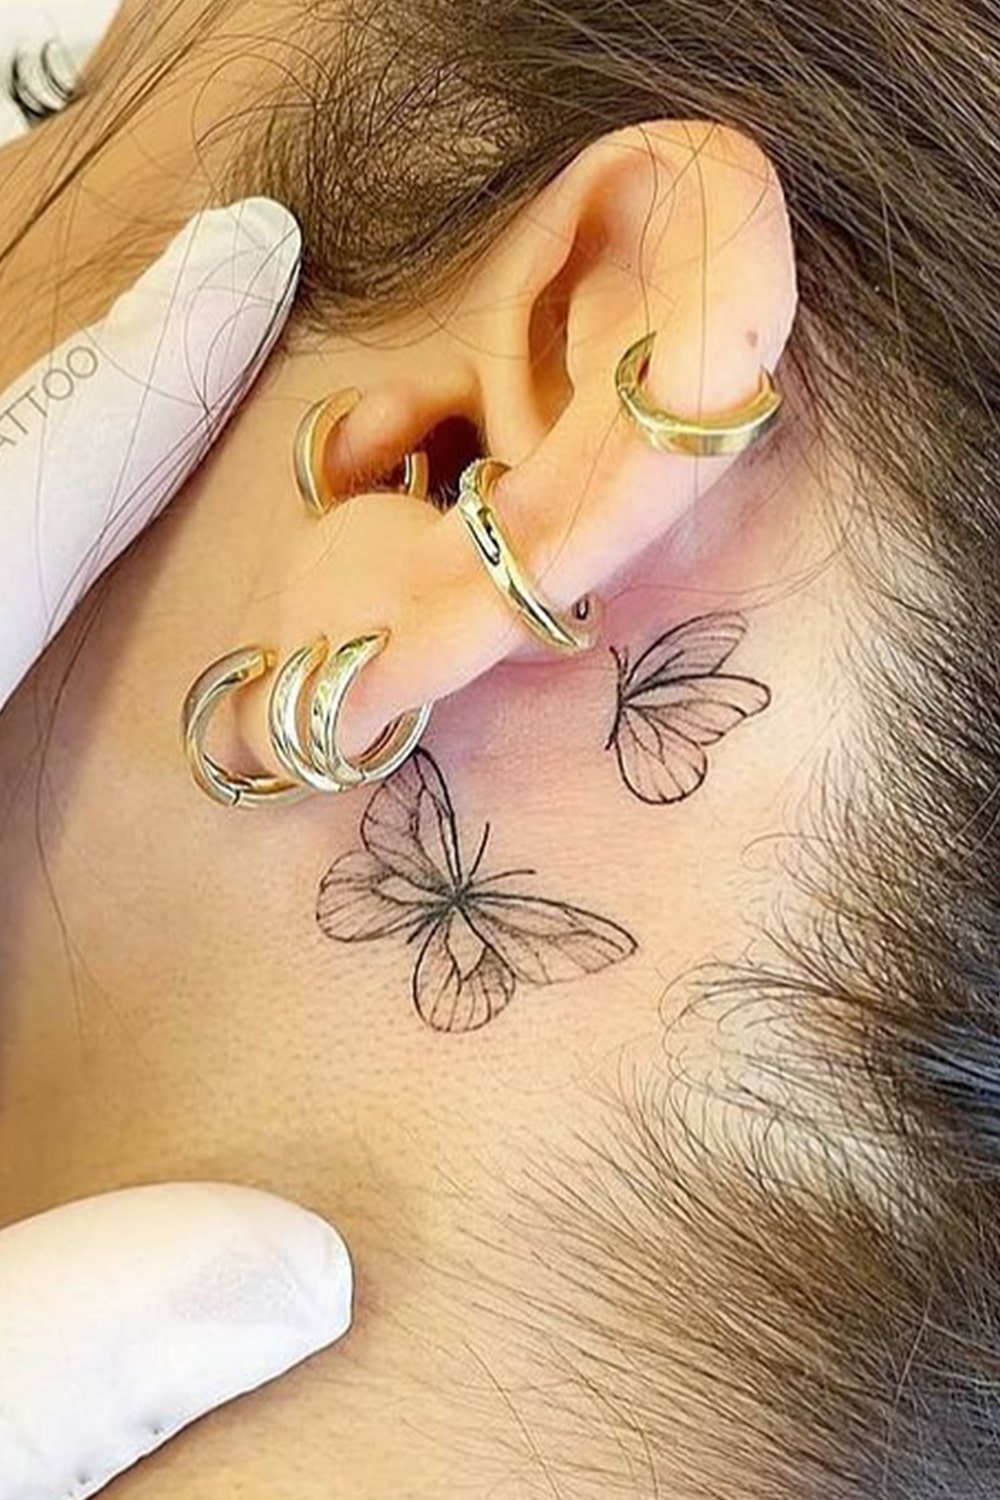 tatuagem-na-orelha-de-borboletas 